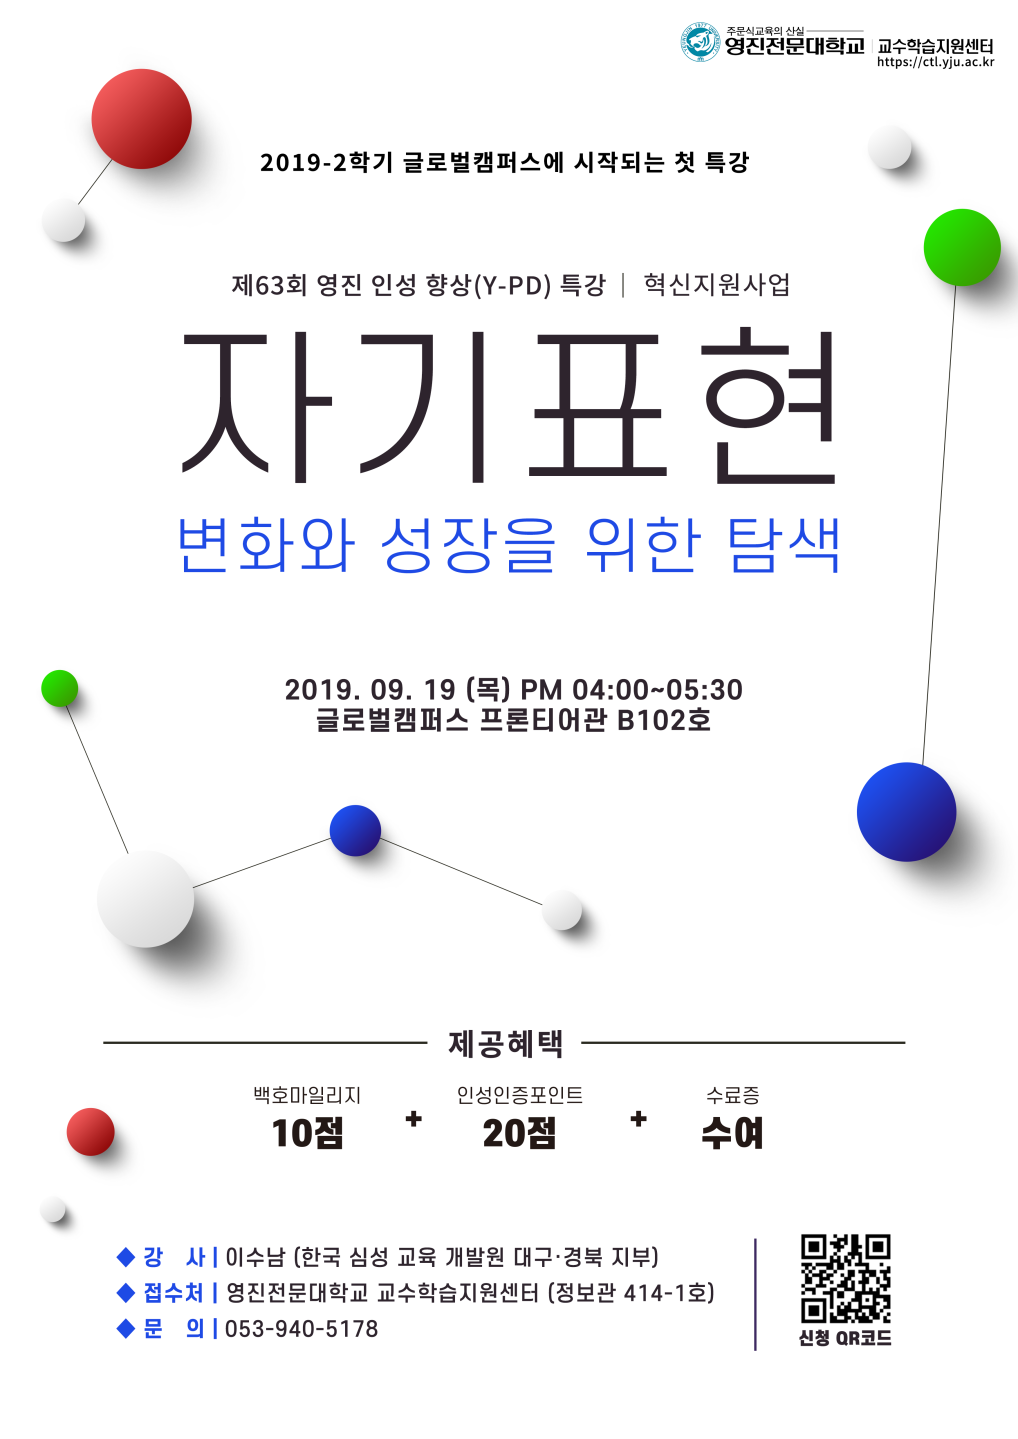 2019-2 혁신지원사업 제63회 영진인성향상(Y-PD)특강_포스터.png